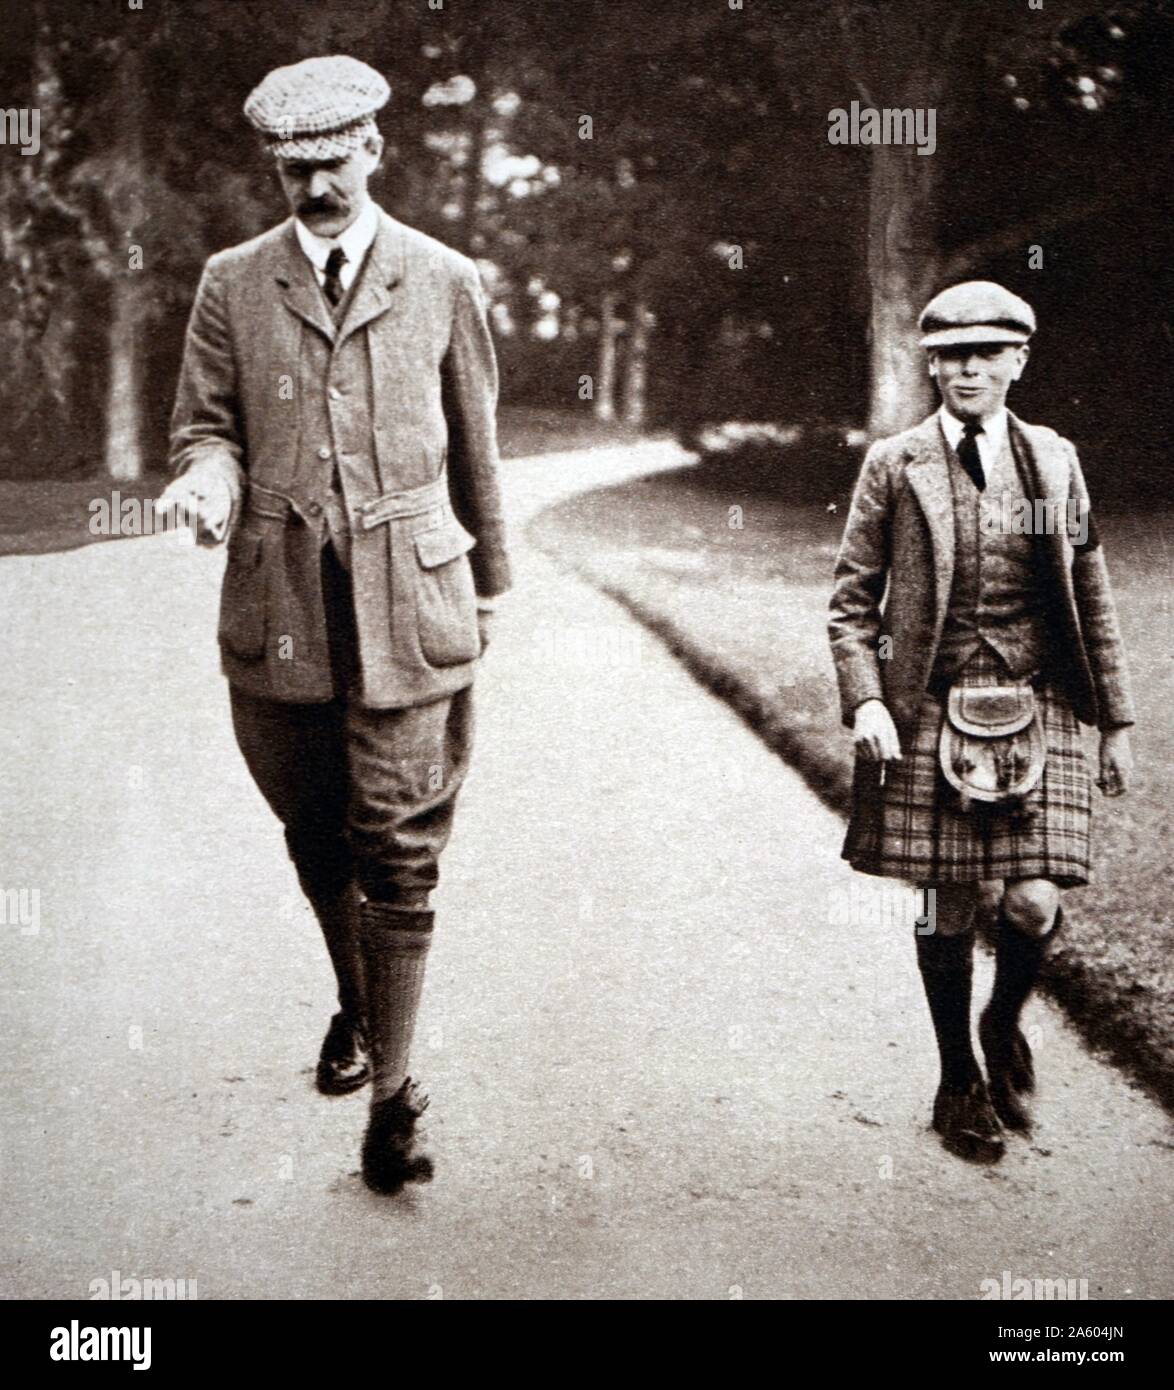 Foto von Prinz Albert Frederick Arthur George (1865-1936) mit seinem Lehrer in Balmoral Castle, Schottland. Vom 20. Jahrhundert Stockfoto